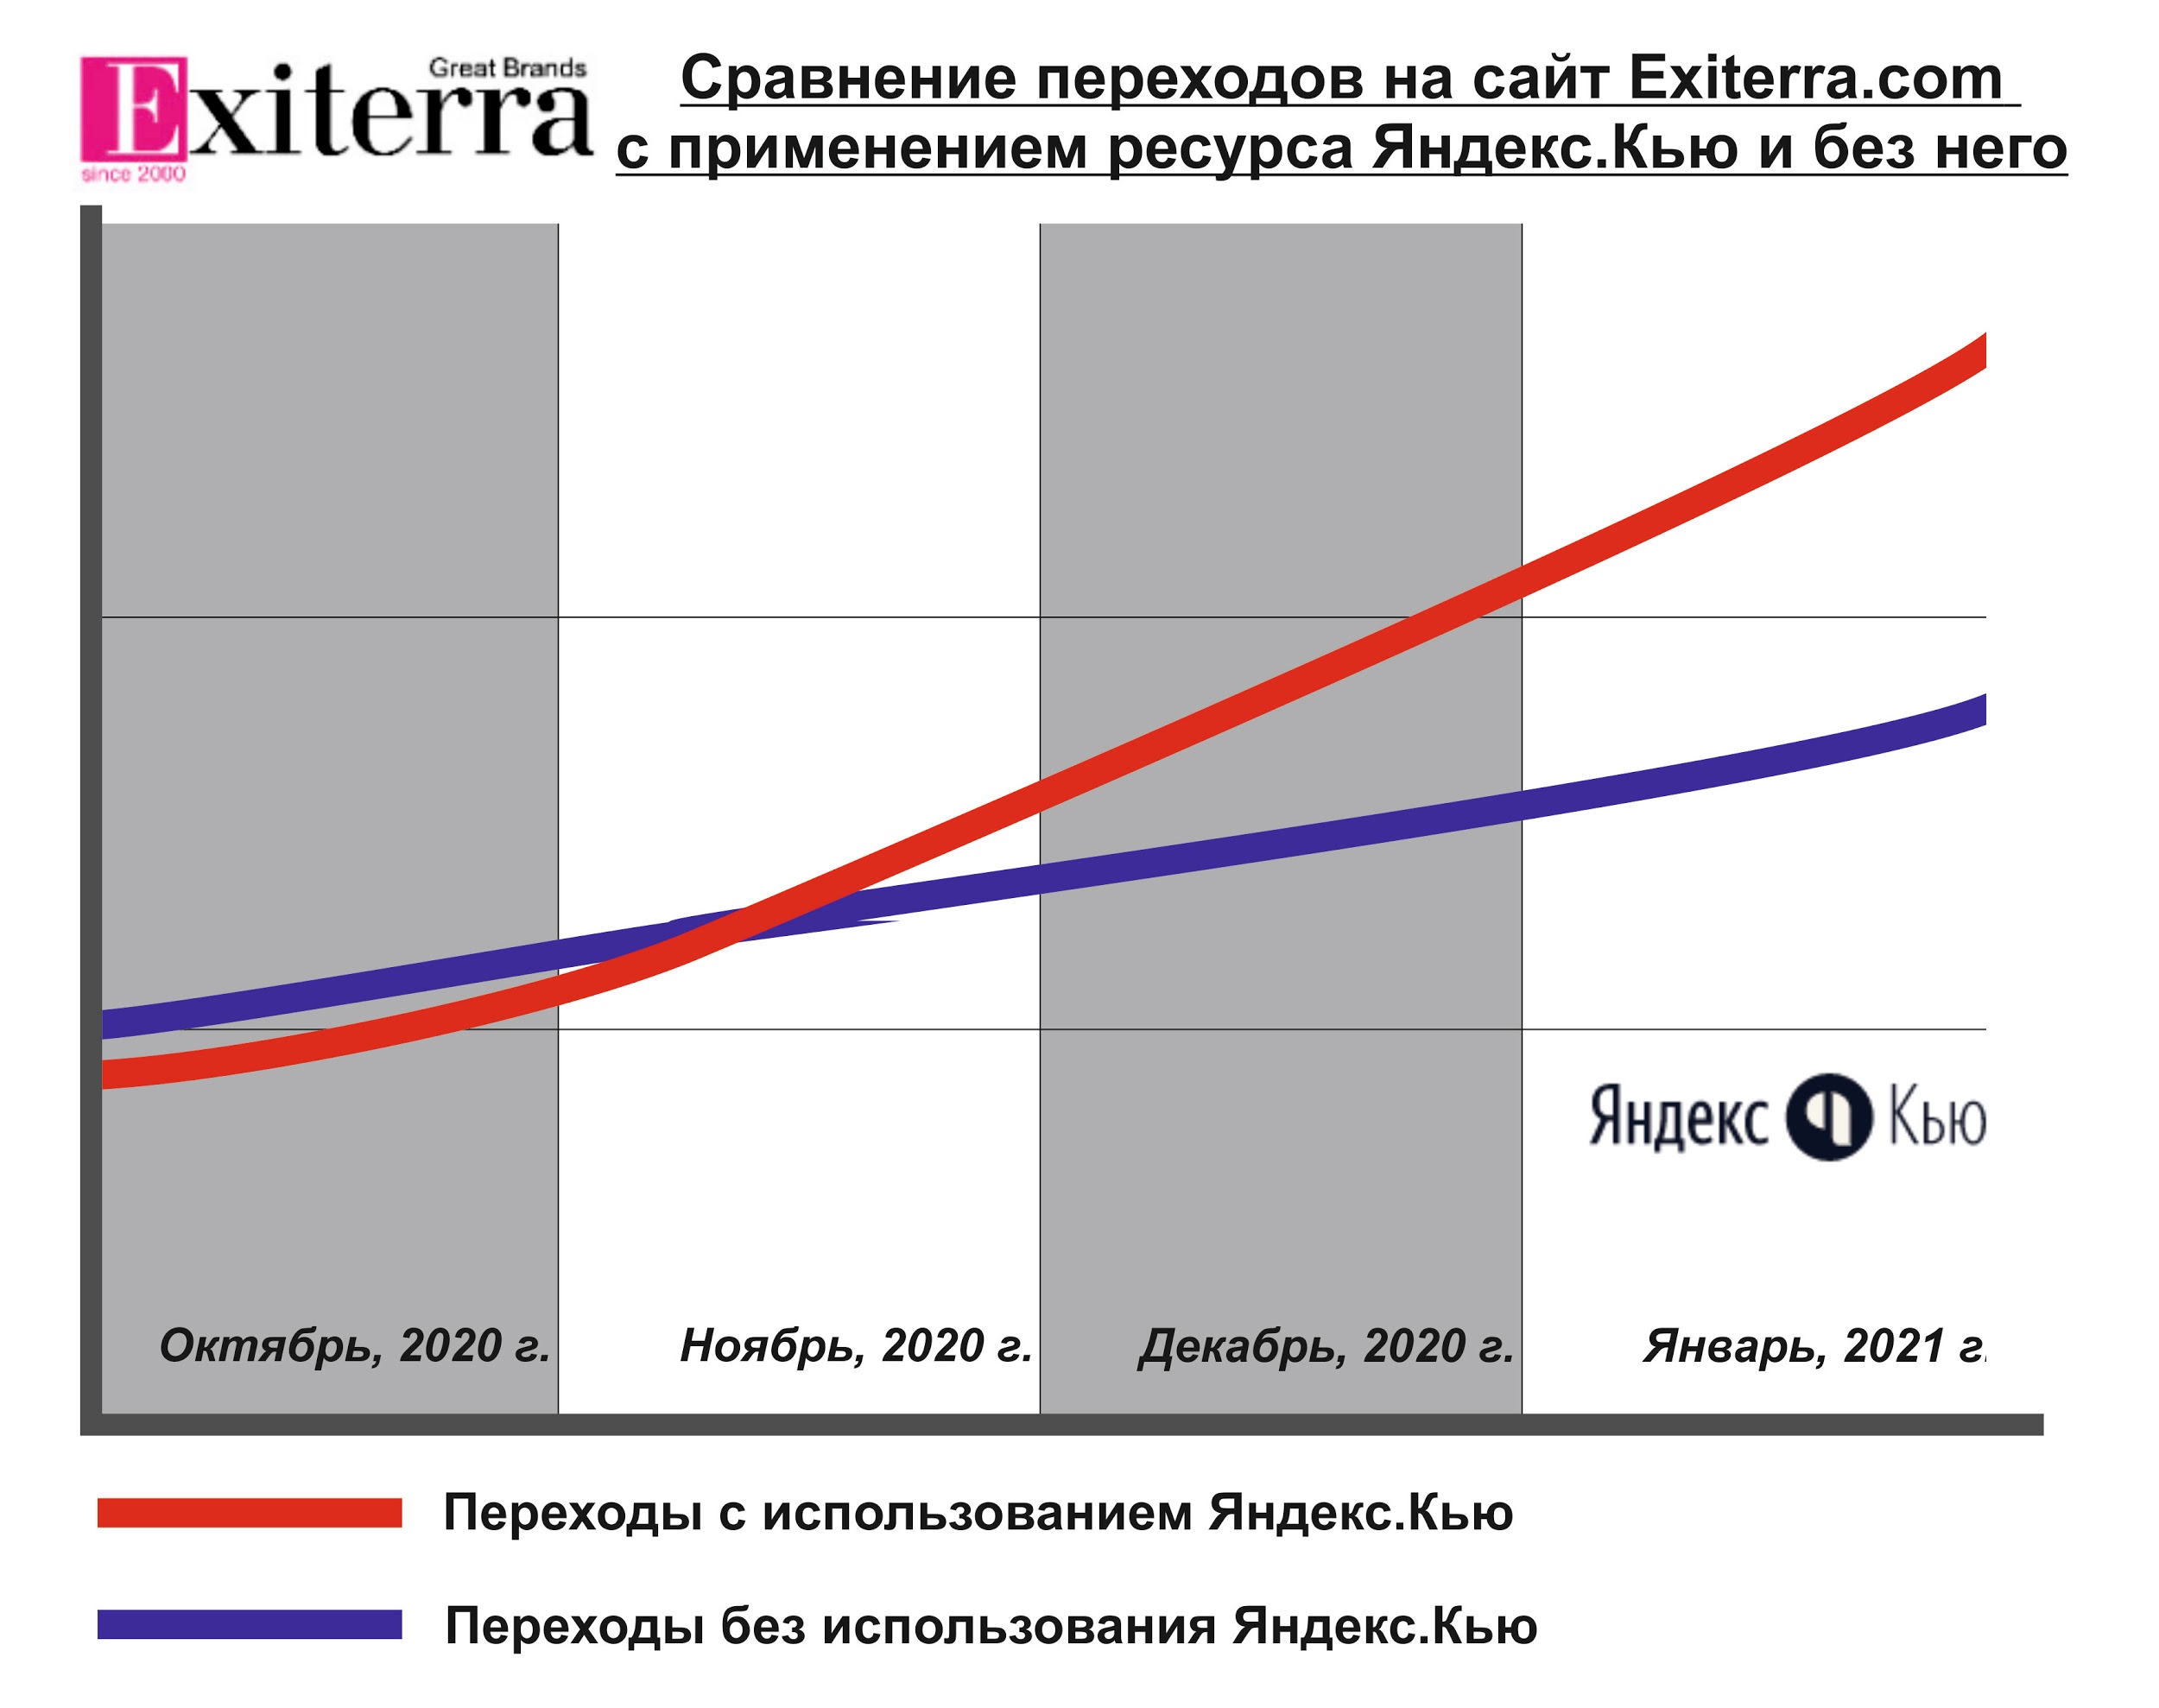 Продвижение в Яндекс.Кью: на примере проектов Exiterra